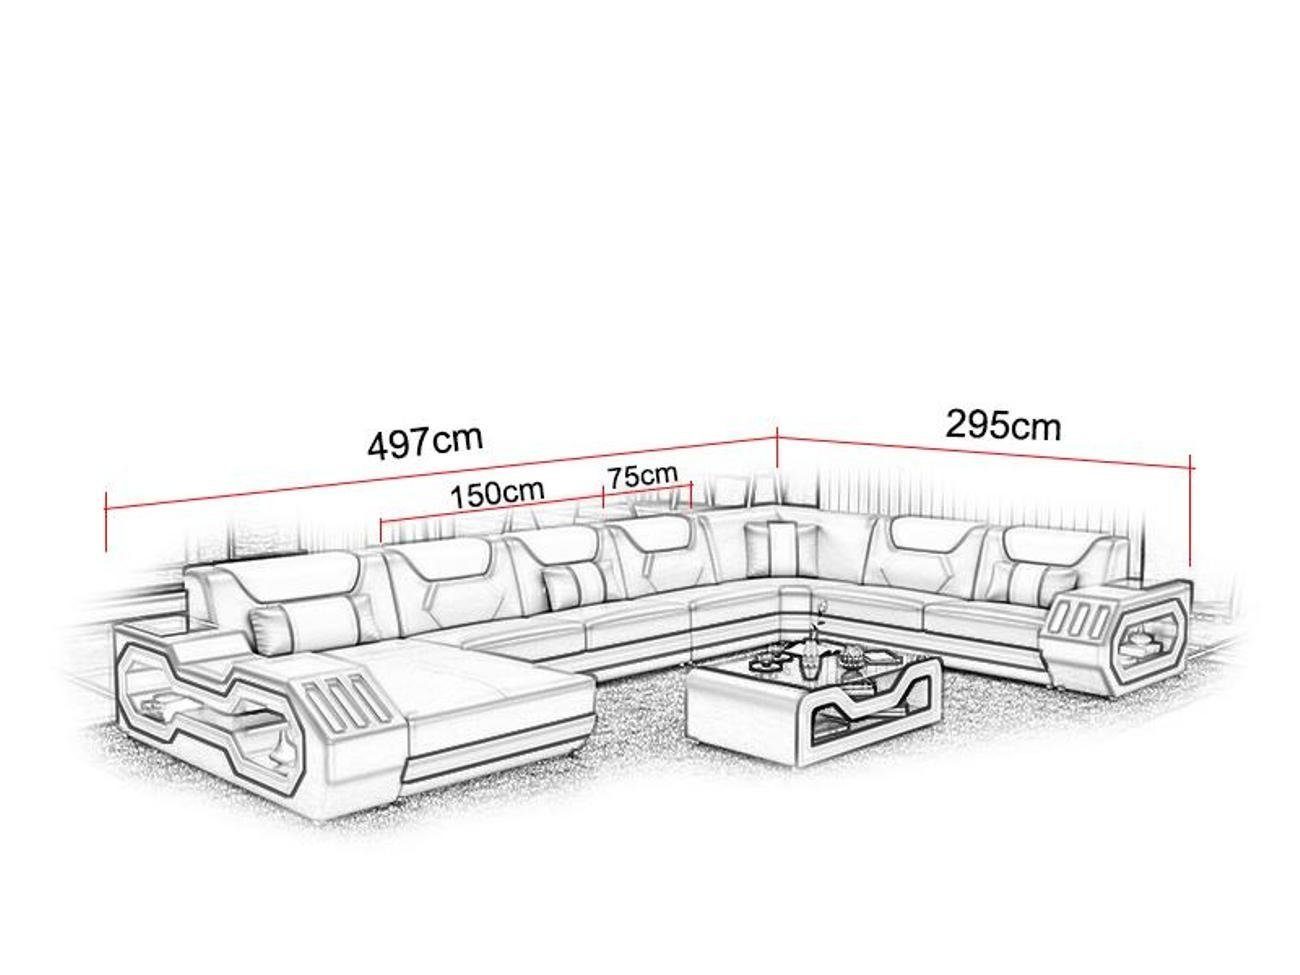 JVmoebel Wohnzimmer-Set, Ecksofa U-Form Couchtisch Grau Leder Schwarz/Silber Polster Couch Modern Design